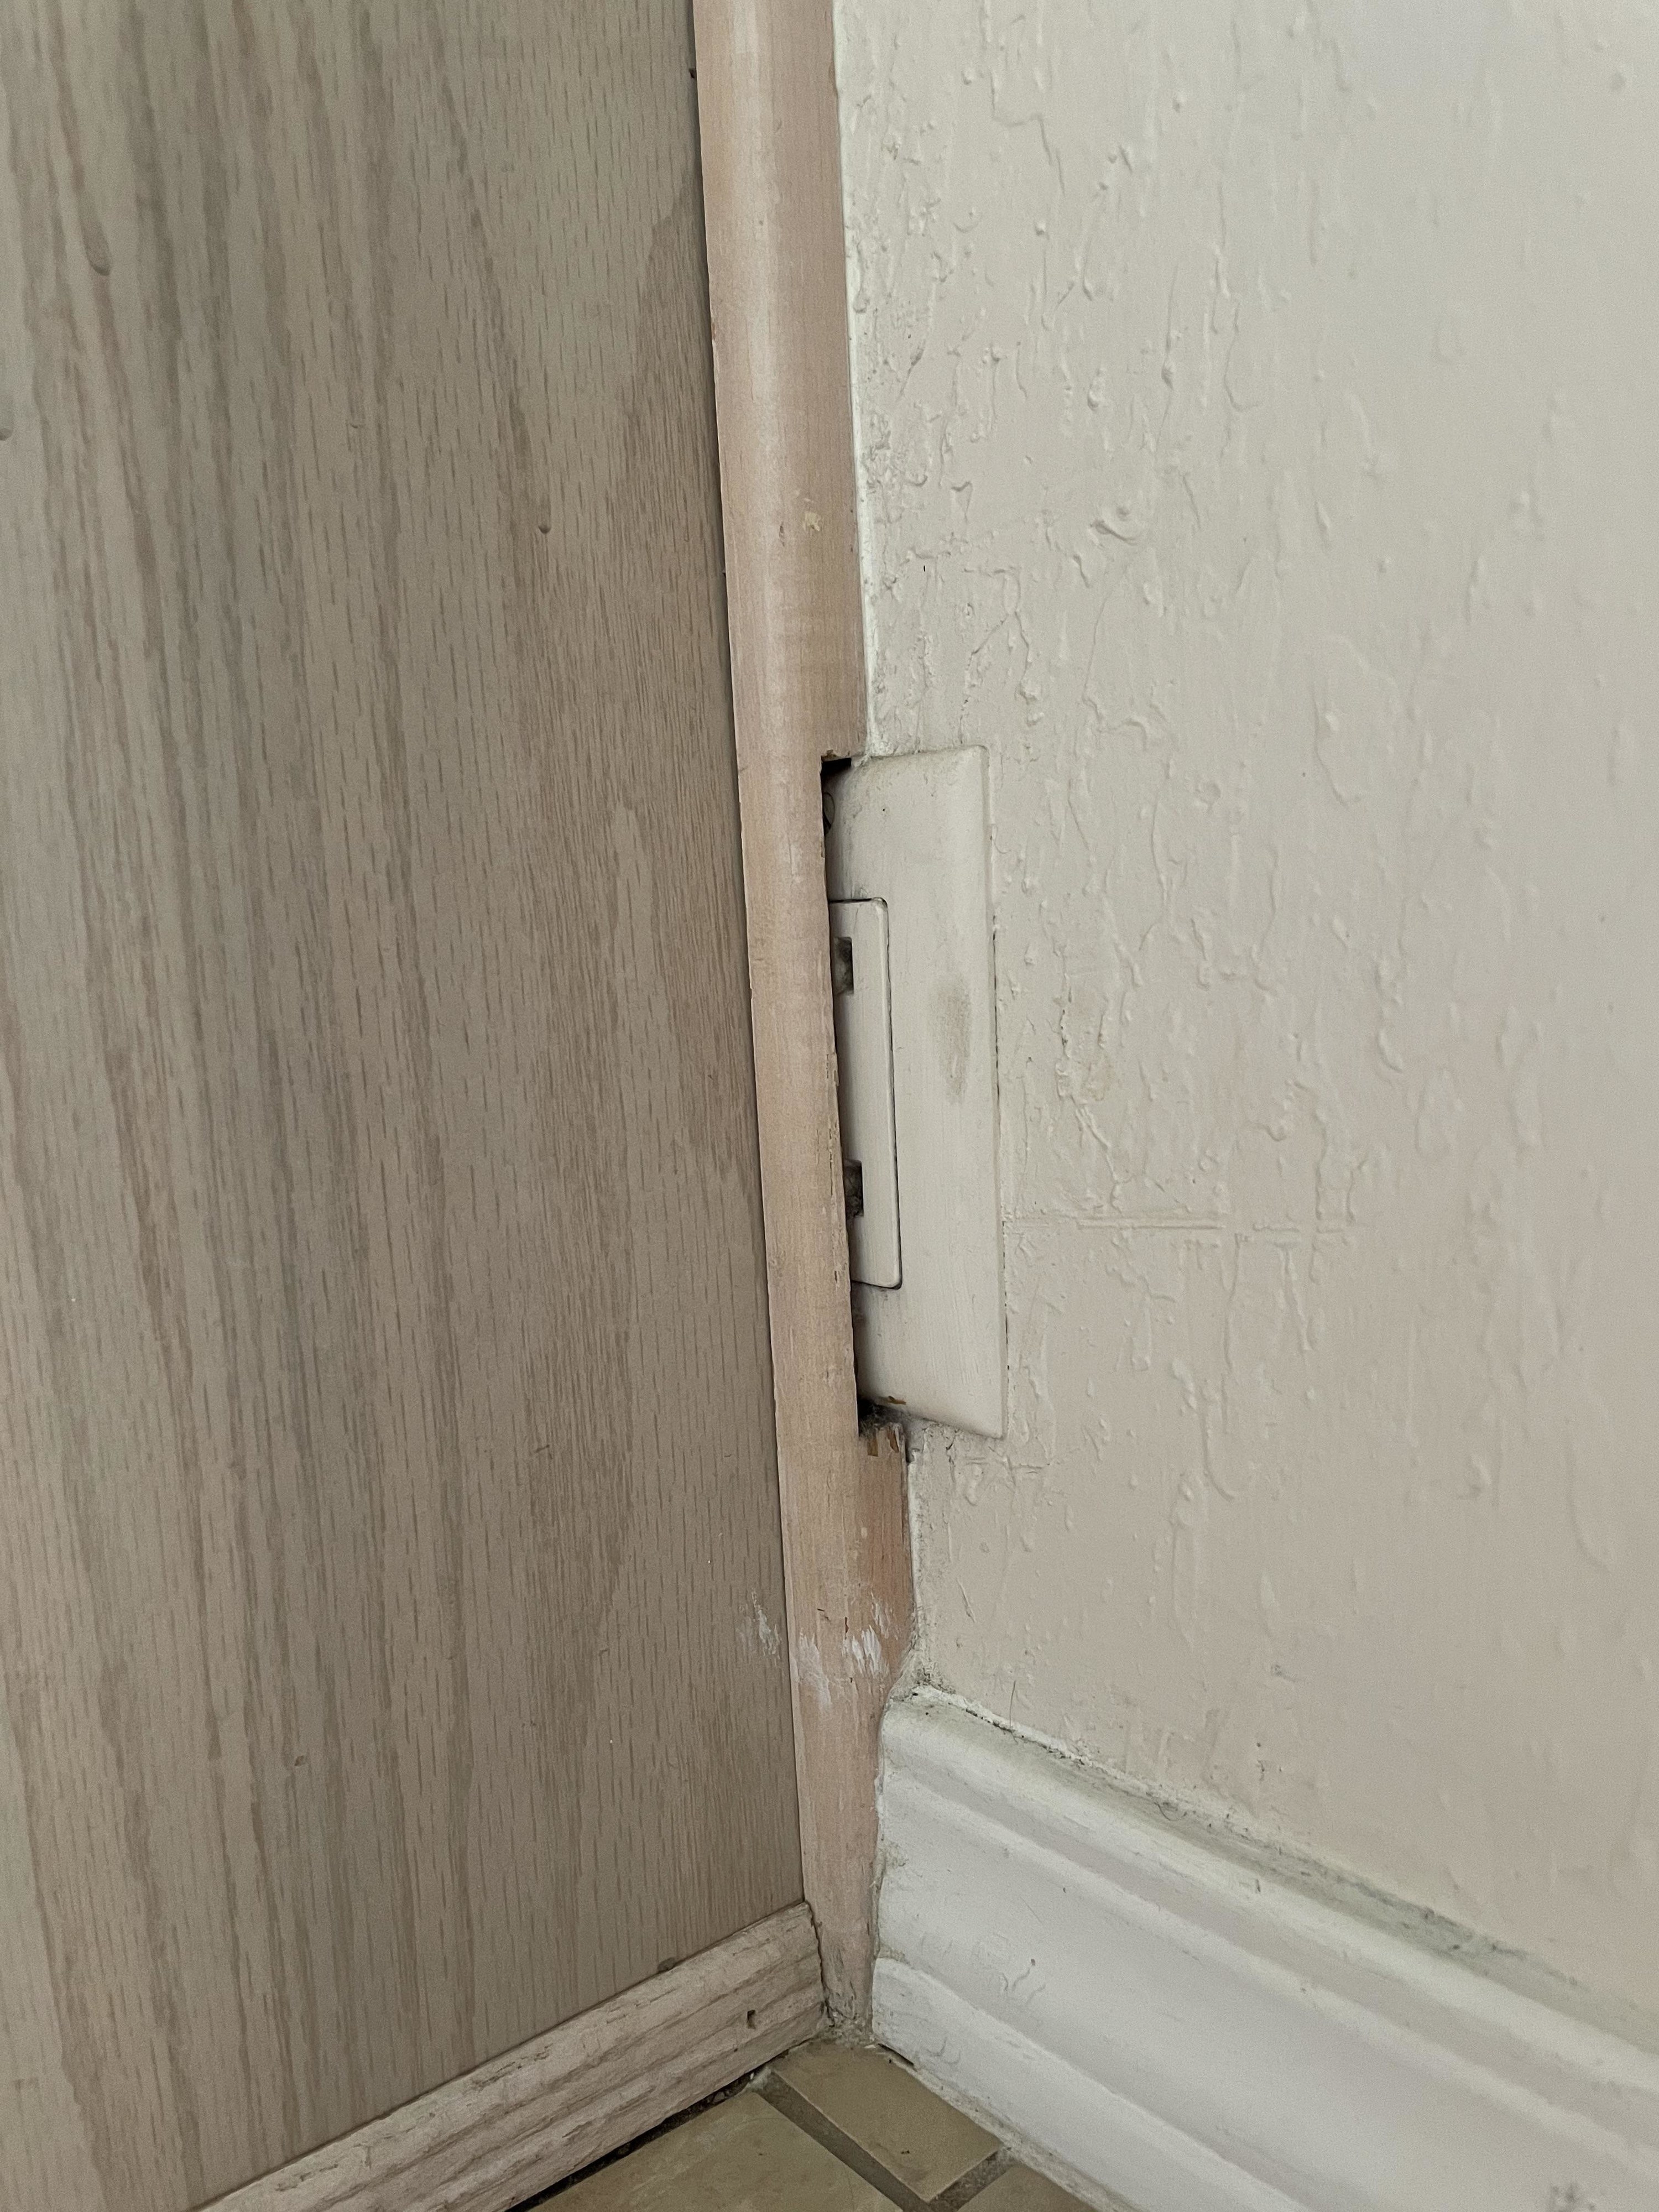 Outlet half hidden behind a wall